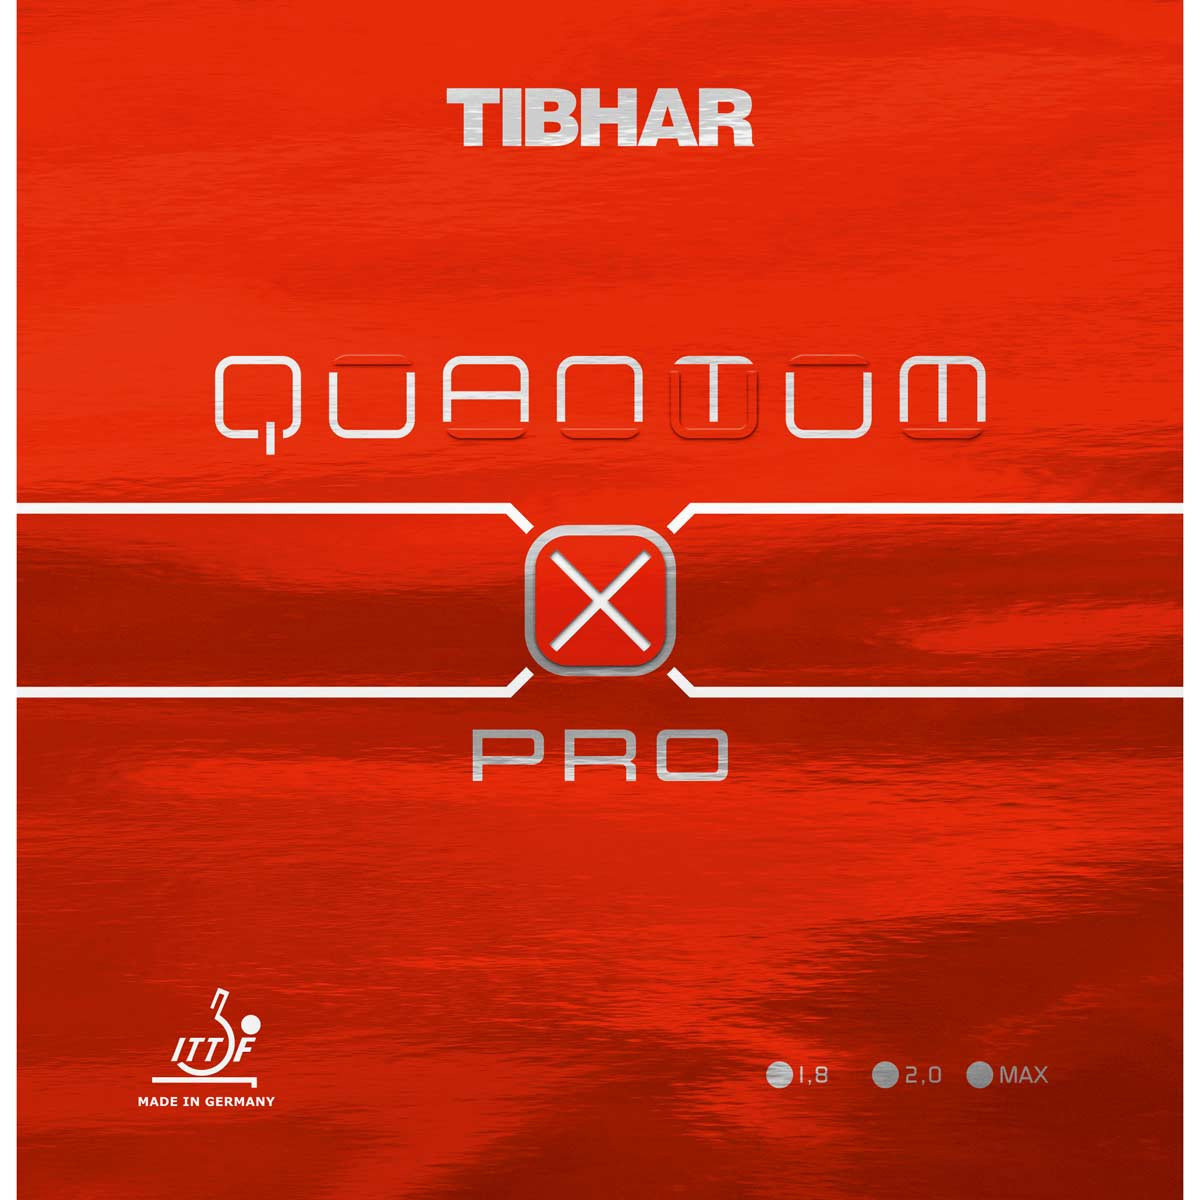 TIBHAR Rubber Quantum X Pro red 1,8 mm